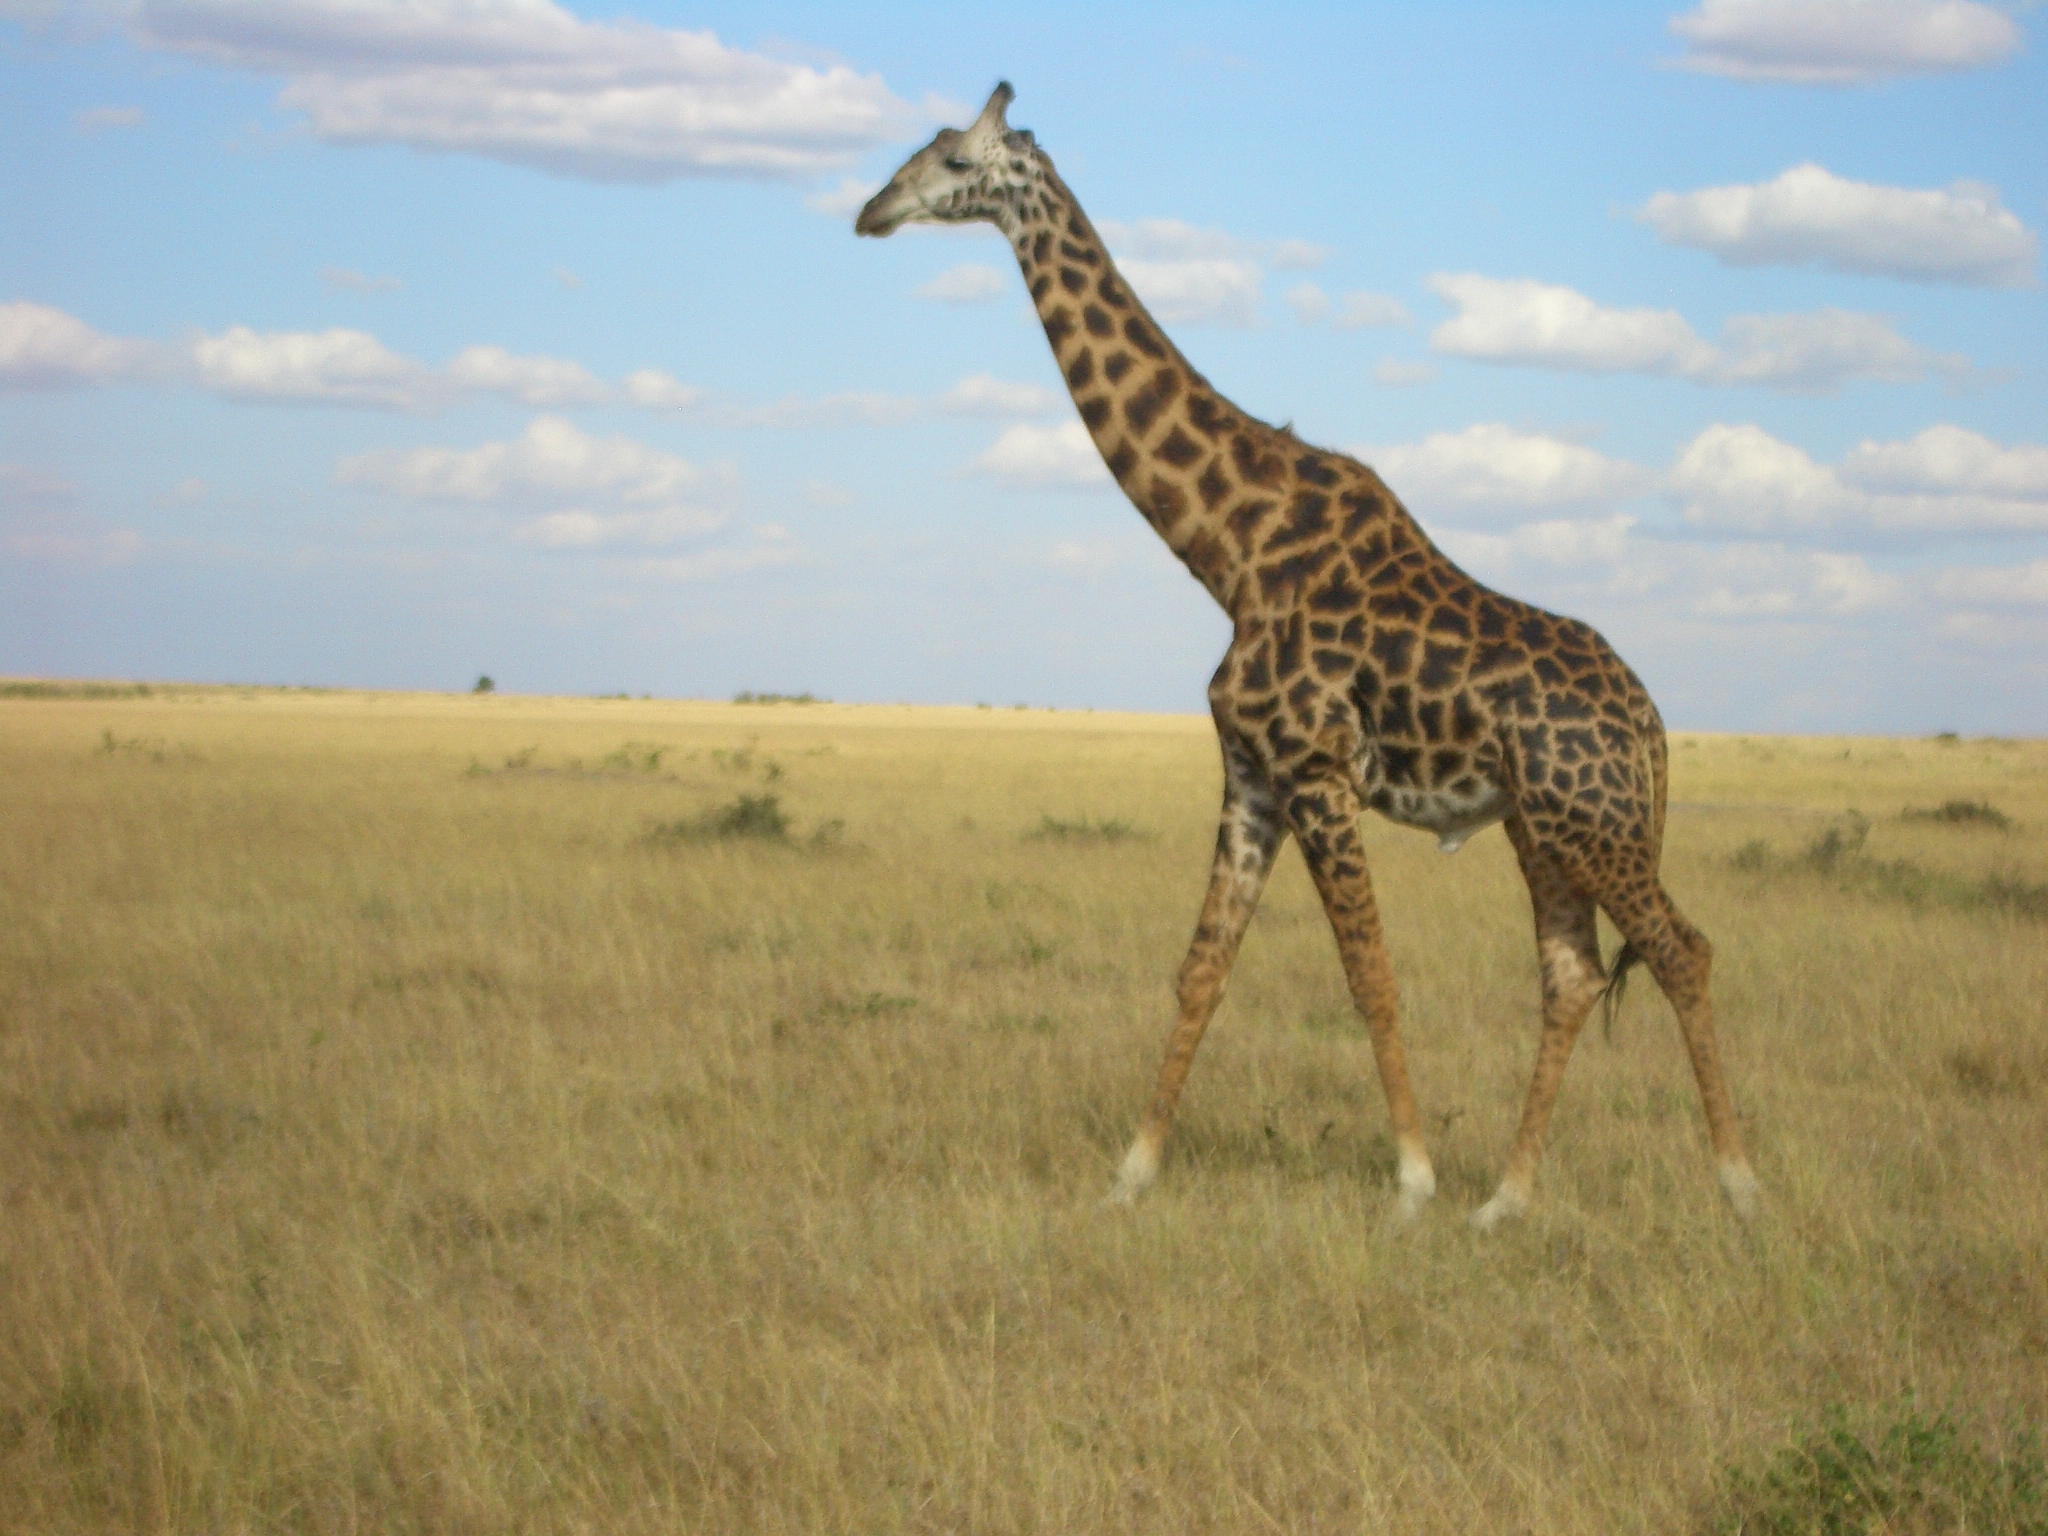 На сафари мы видели абсолютно всех животных: жирафа, льва, буйвола, зебру, слона...